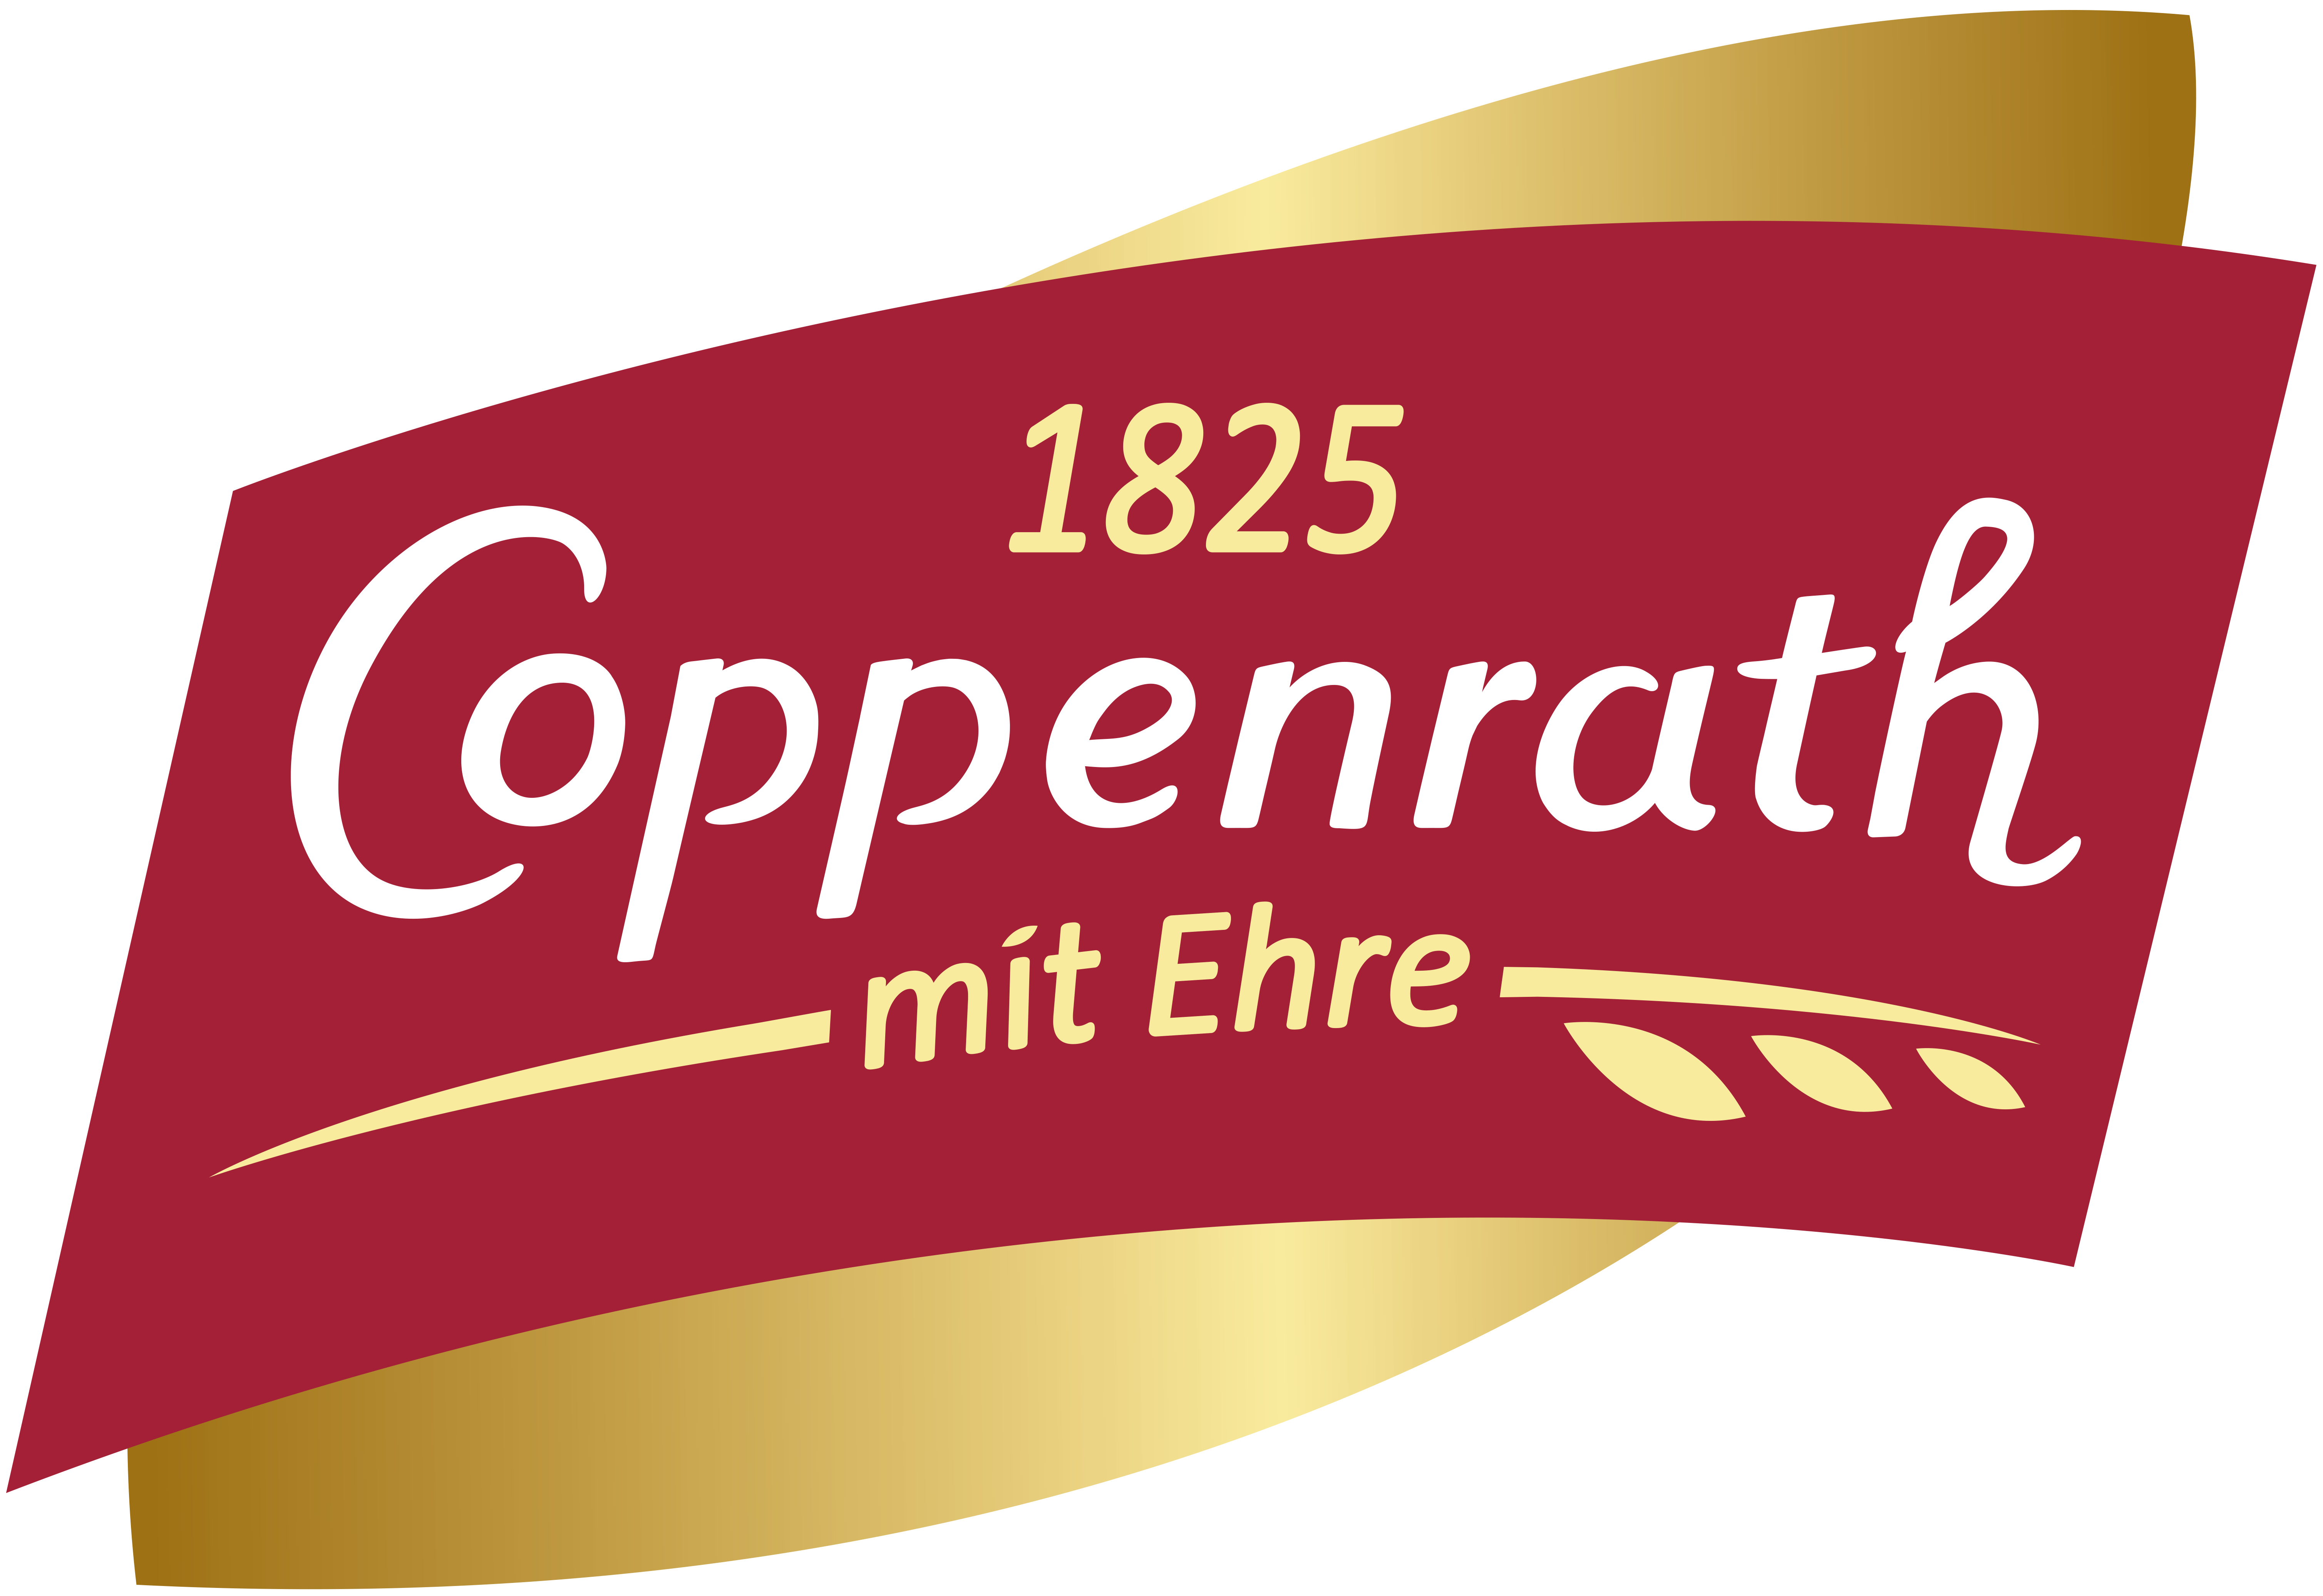 Coppenrath Feingebaeck Logo 2018